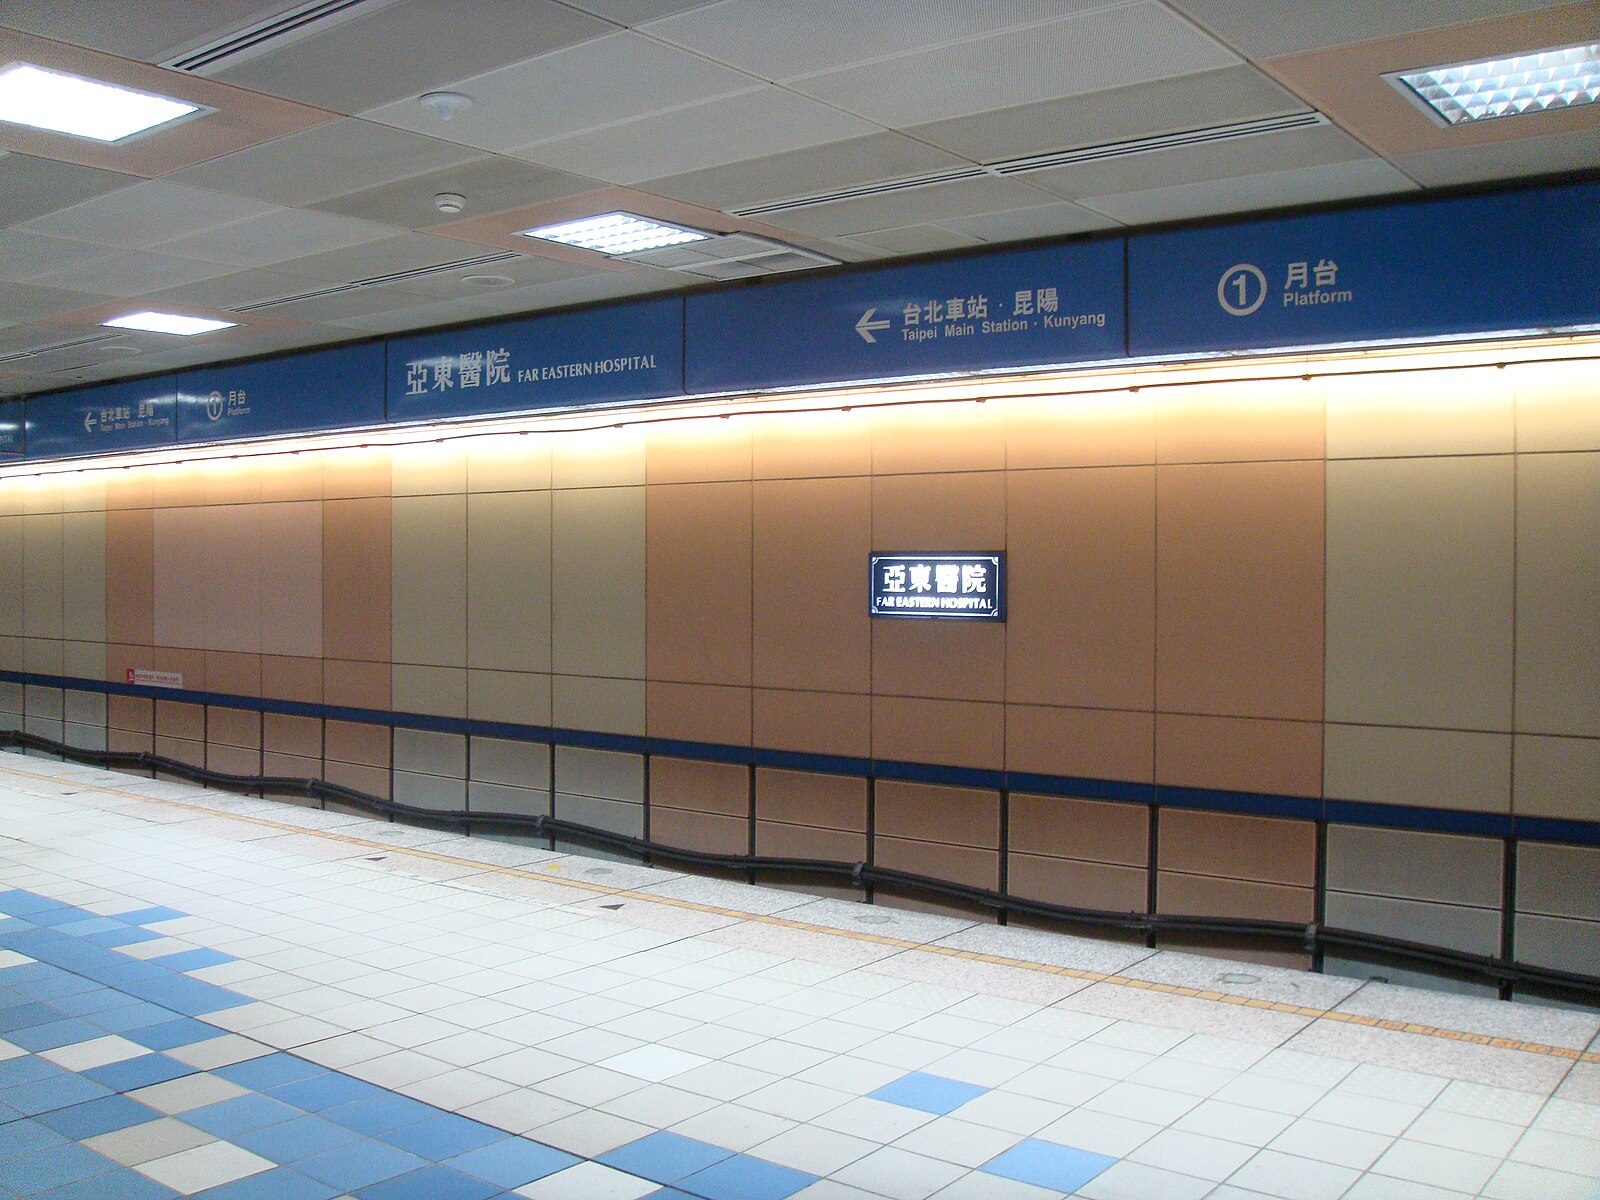 Станция Аксака. The furthest station